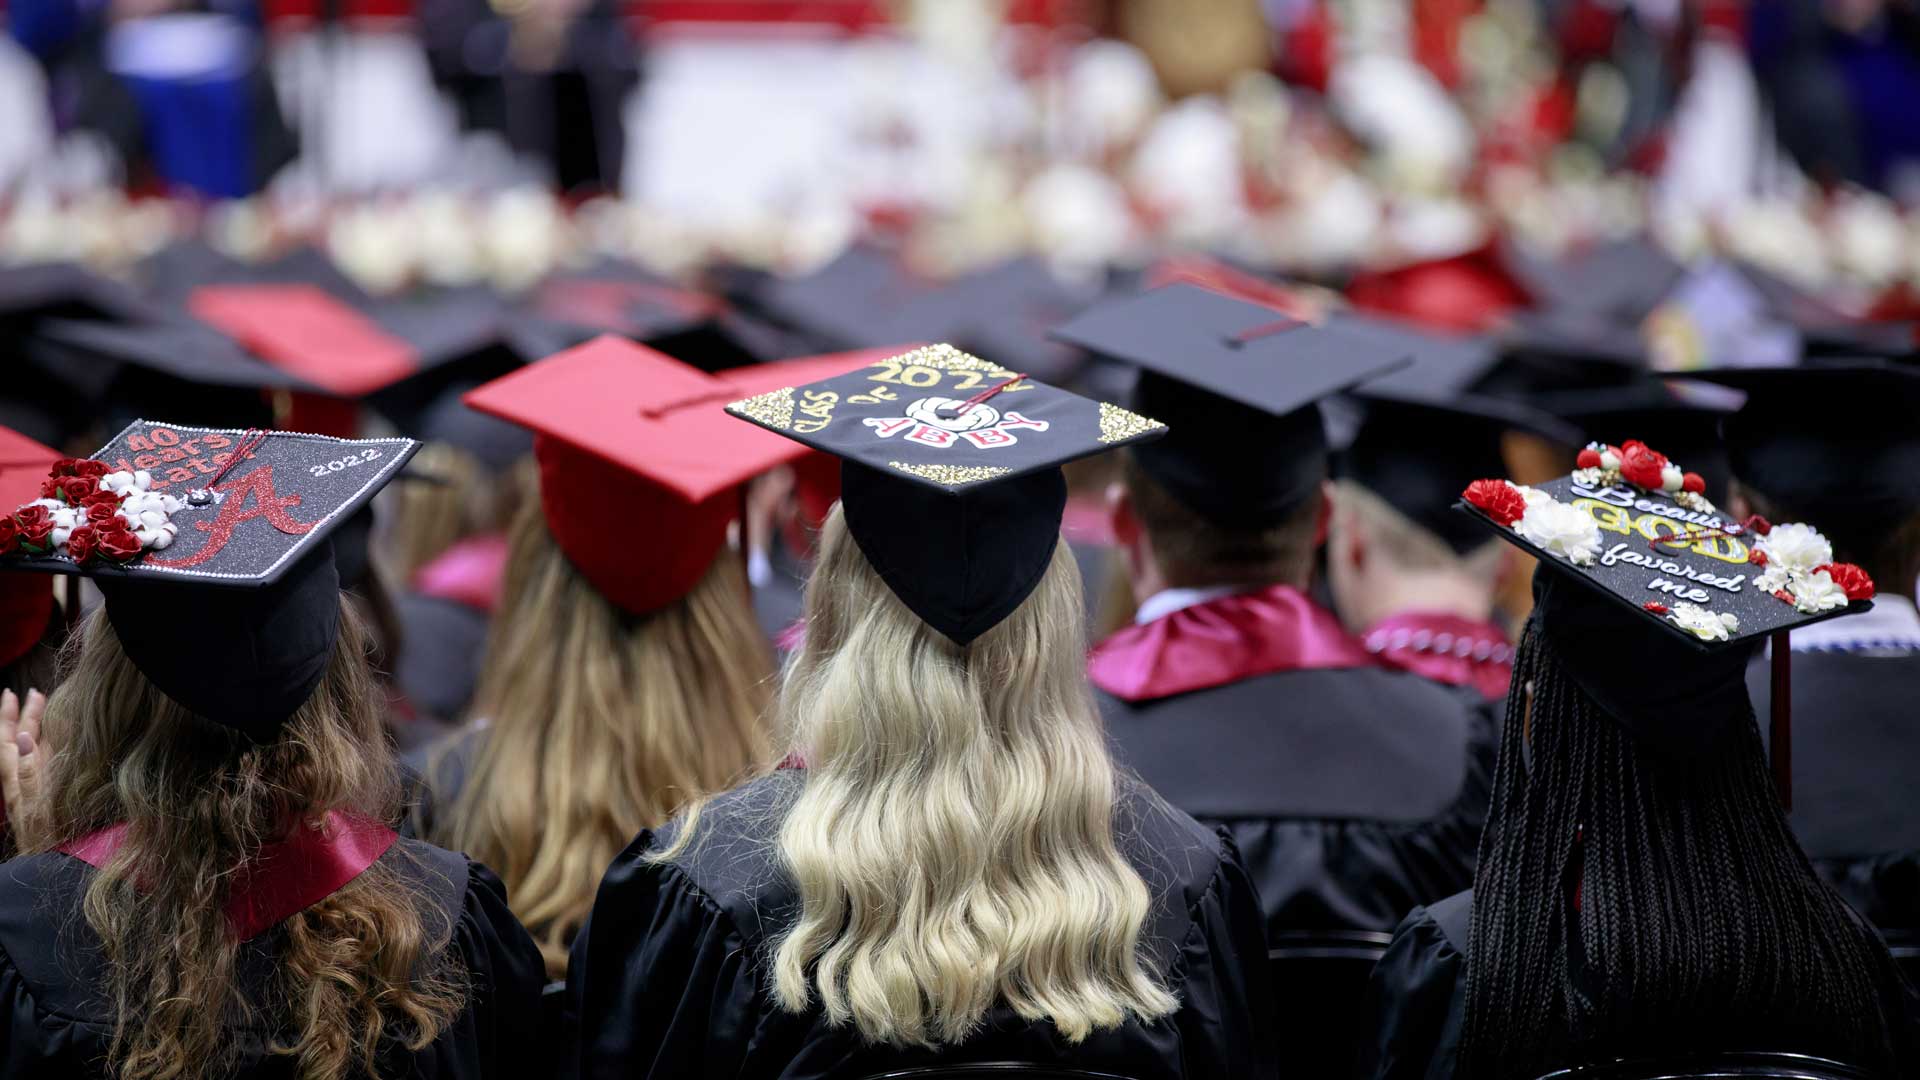 Graduation caps are shown.